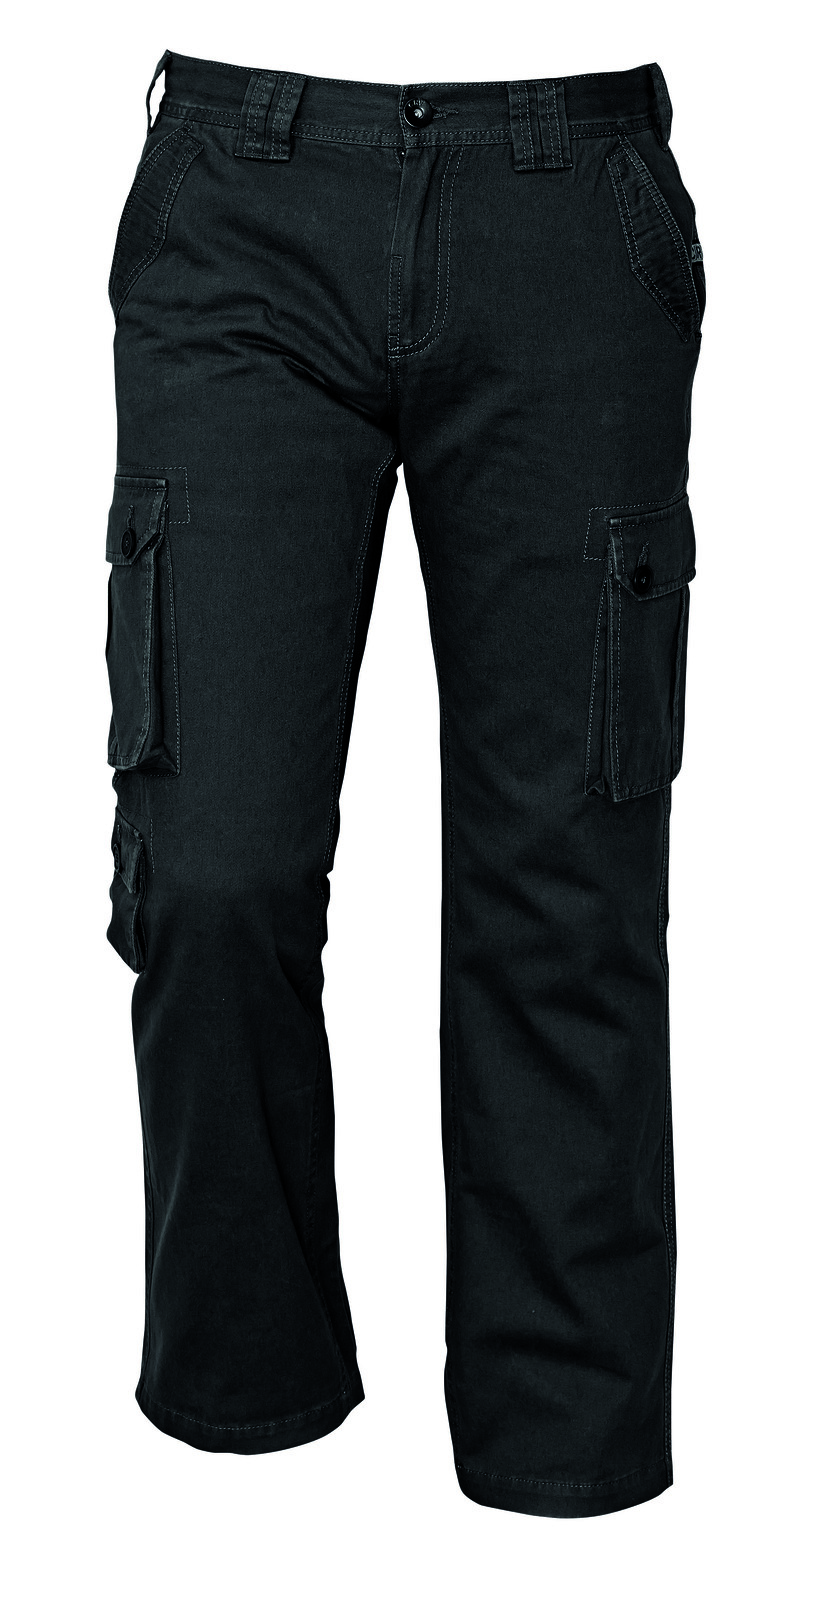 Pánske nohavice Chena kapsáče - veľkosť: L, farba: čierna